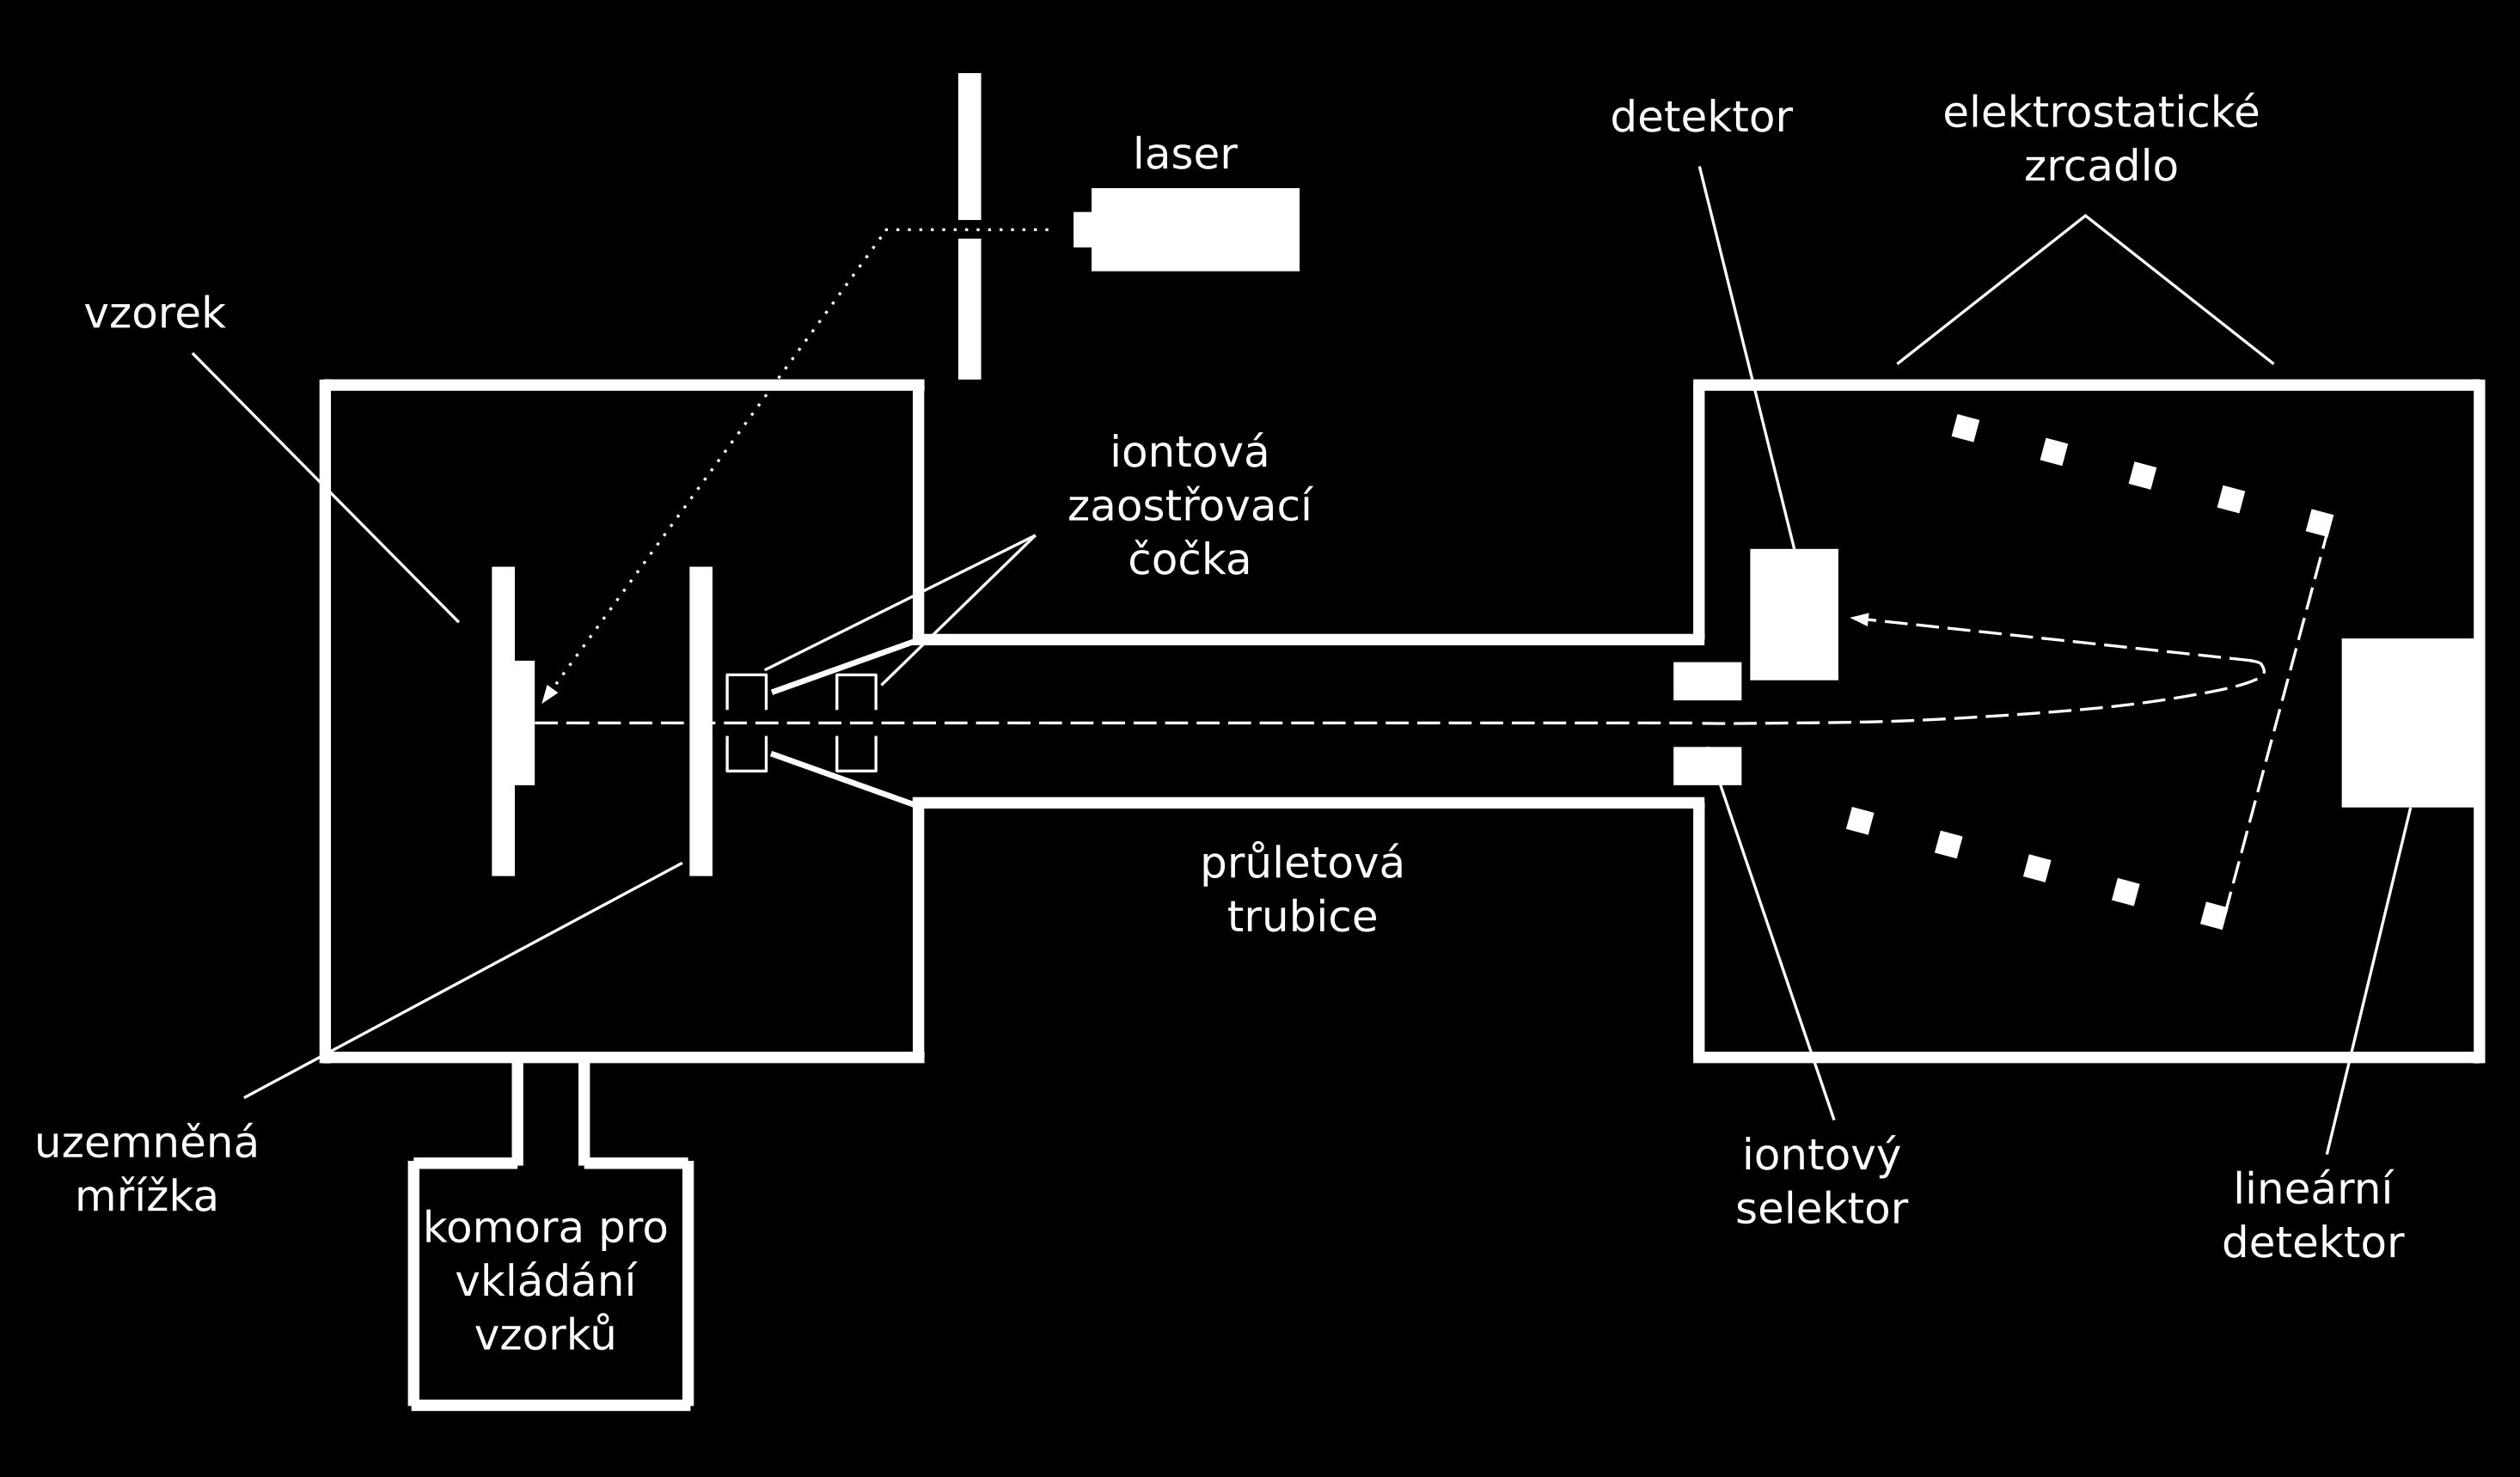 KAPITOLA 5. MĚŘENÍ PARCIÁLNÍCH TLAKŮ Obrázek 5.5: Průletový hmotnostní spektrometr. K ionizaci vzorku v pevném skupenství je používán laser, pro vkládání vzorků malá pomocná komora. 5.4 Bennettův spektrometr Dalším a v minulosti velice oblíbeným dynamickým hmotnostním spektrometrem je tzv.